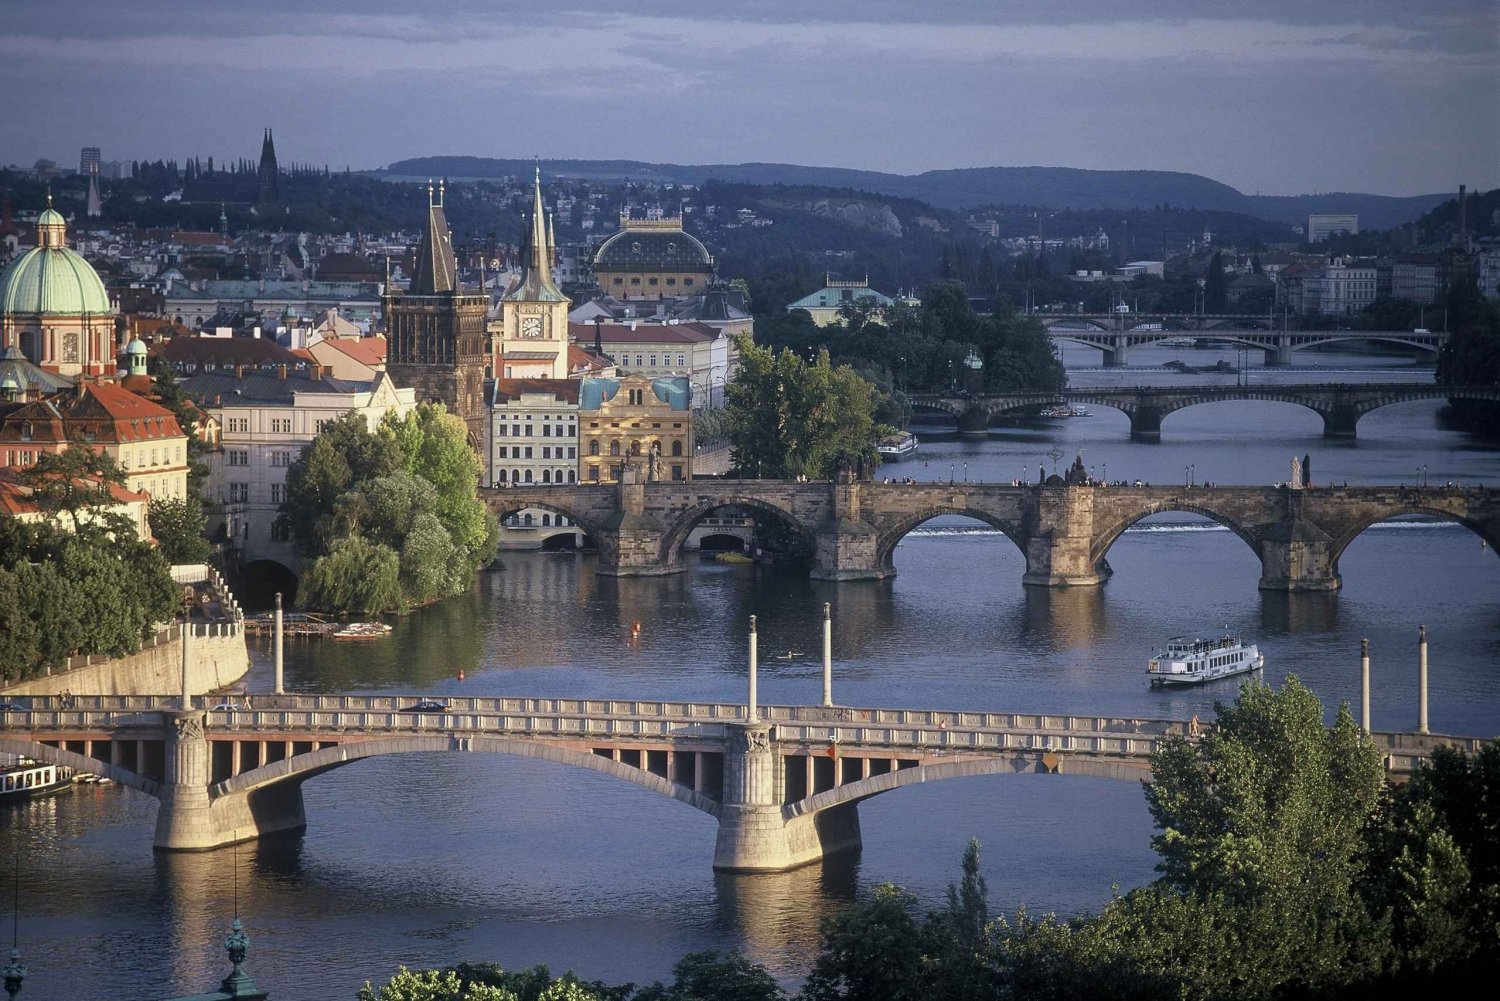 Prag: Flodkrydstogt med transfer til molen